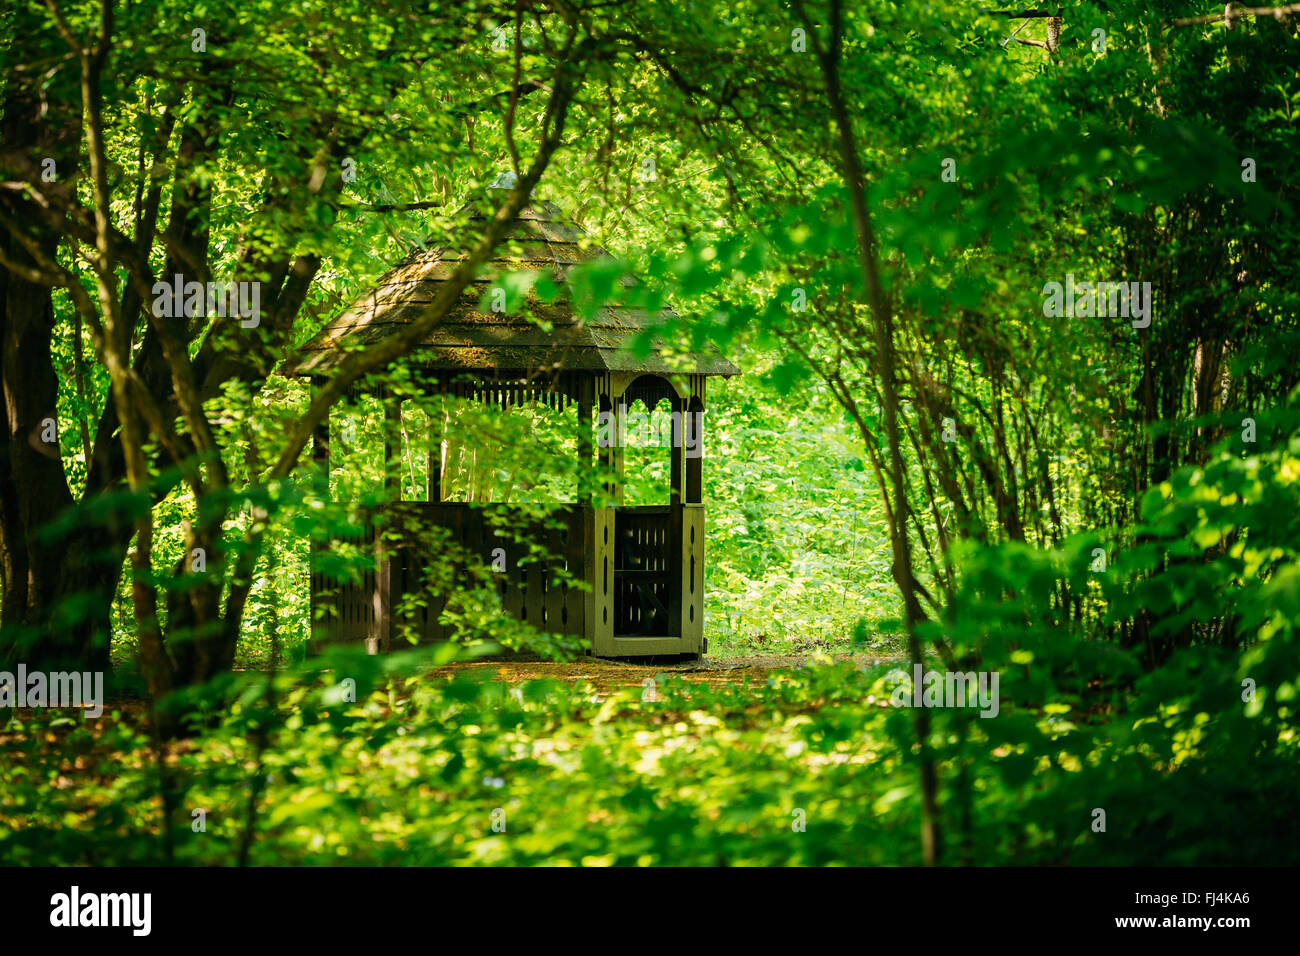 Alte Holz-Pavillon im grünen Garten Park-Wald. Garten Pergola mit Wald im Hintergrund. Stockfoto